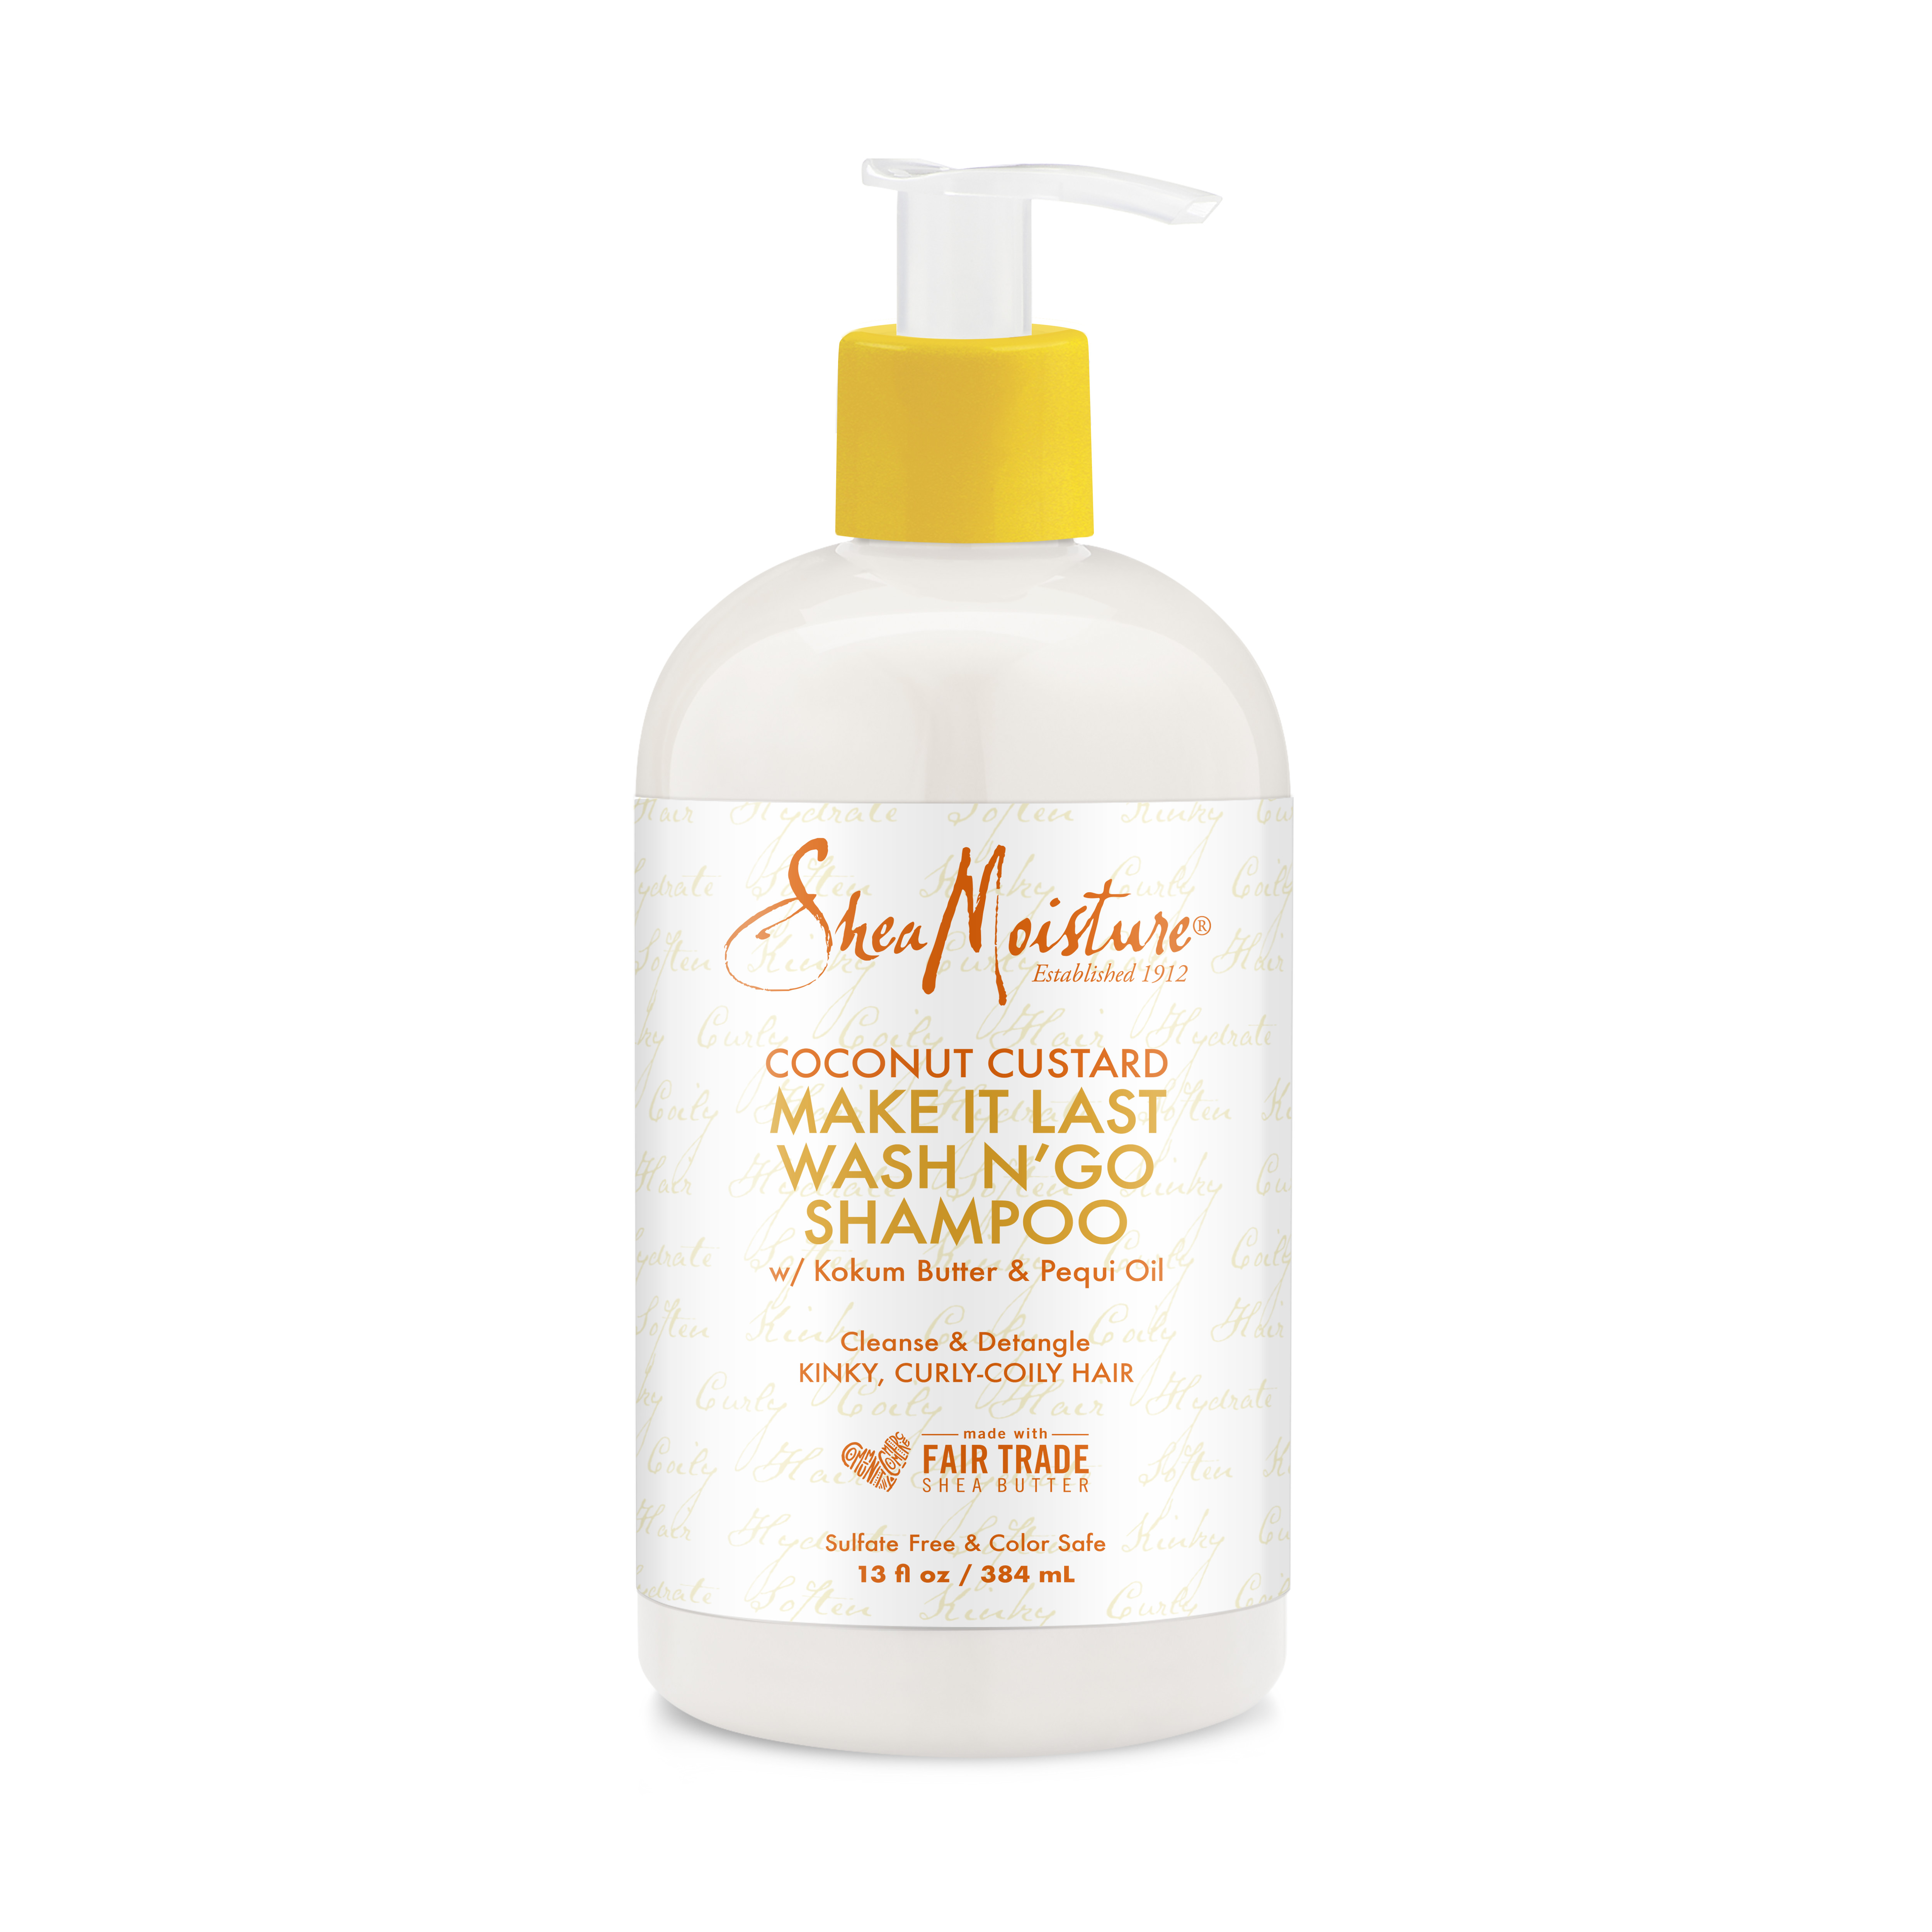 SheaMoisture Wash N' Go Shampoo Phthalate Free Shampoo to Cleanse and Detangle Curly Hair, 13 oz - image 1 of 8